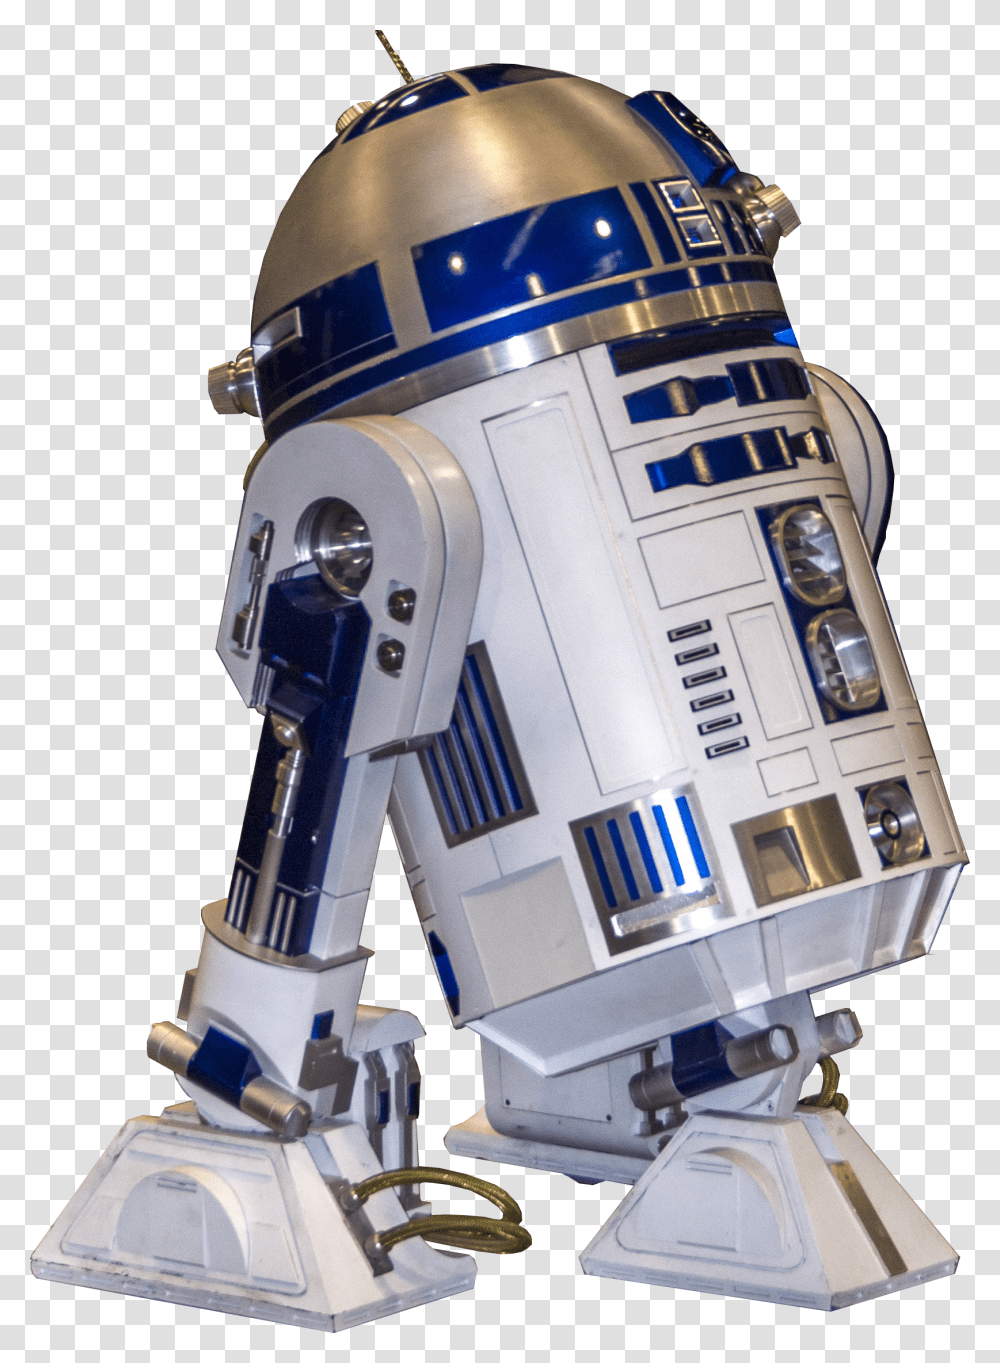 Star Wars Robot, Toy, Helmet, Apparel Transparent Png